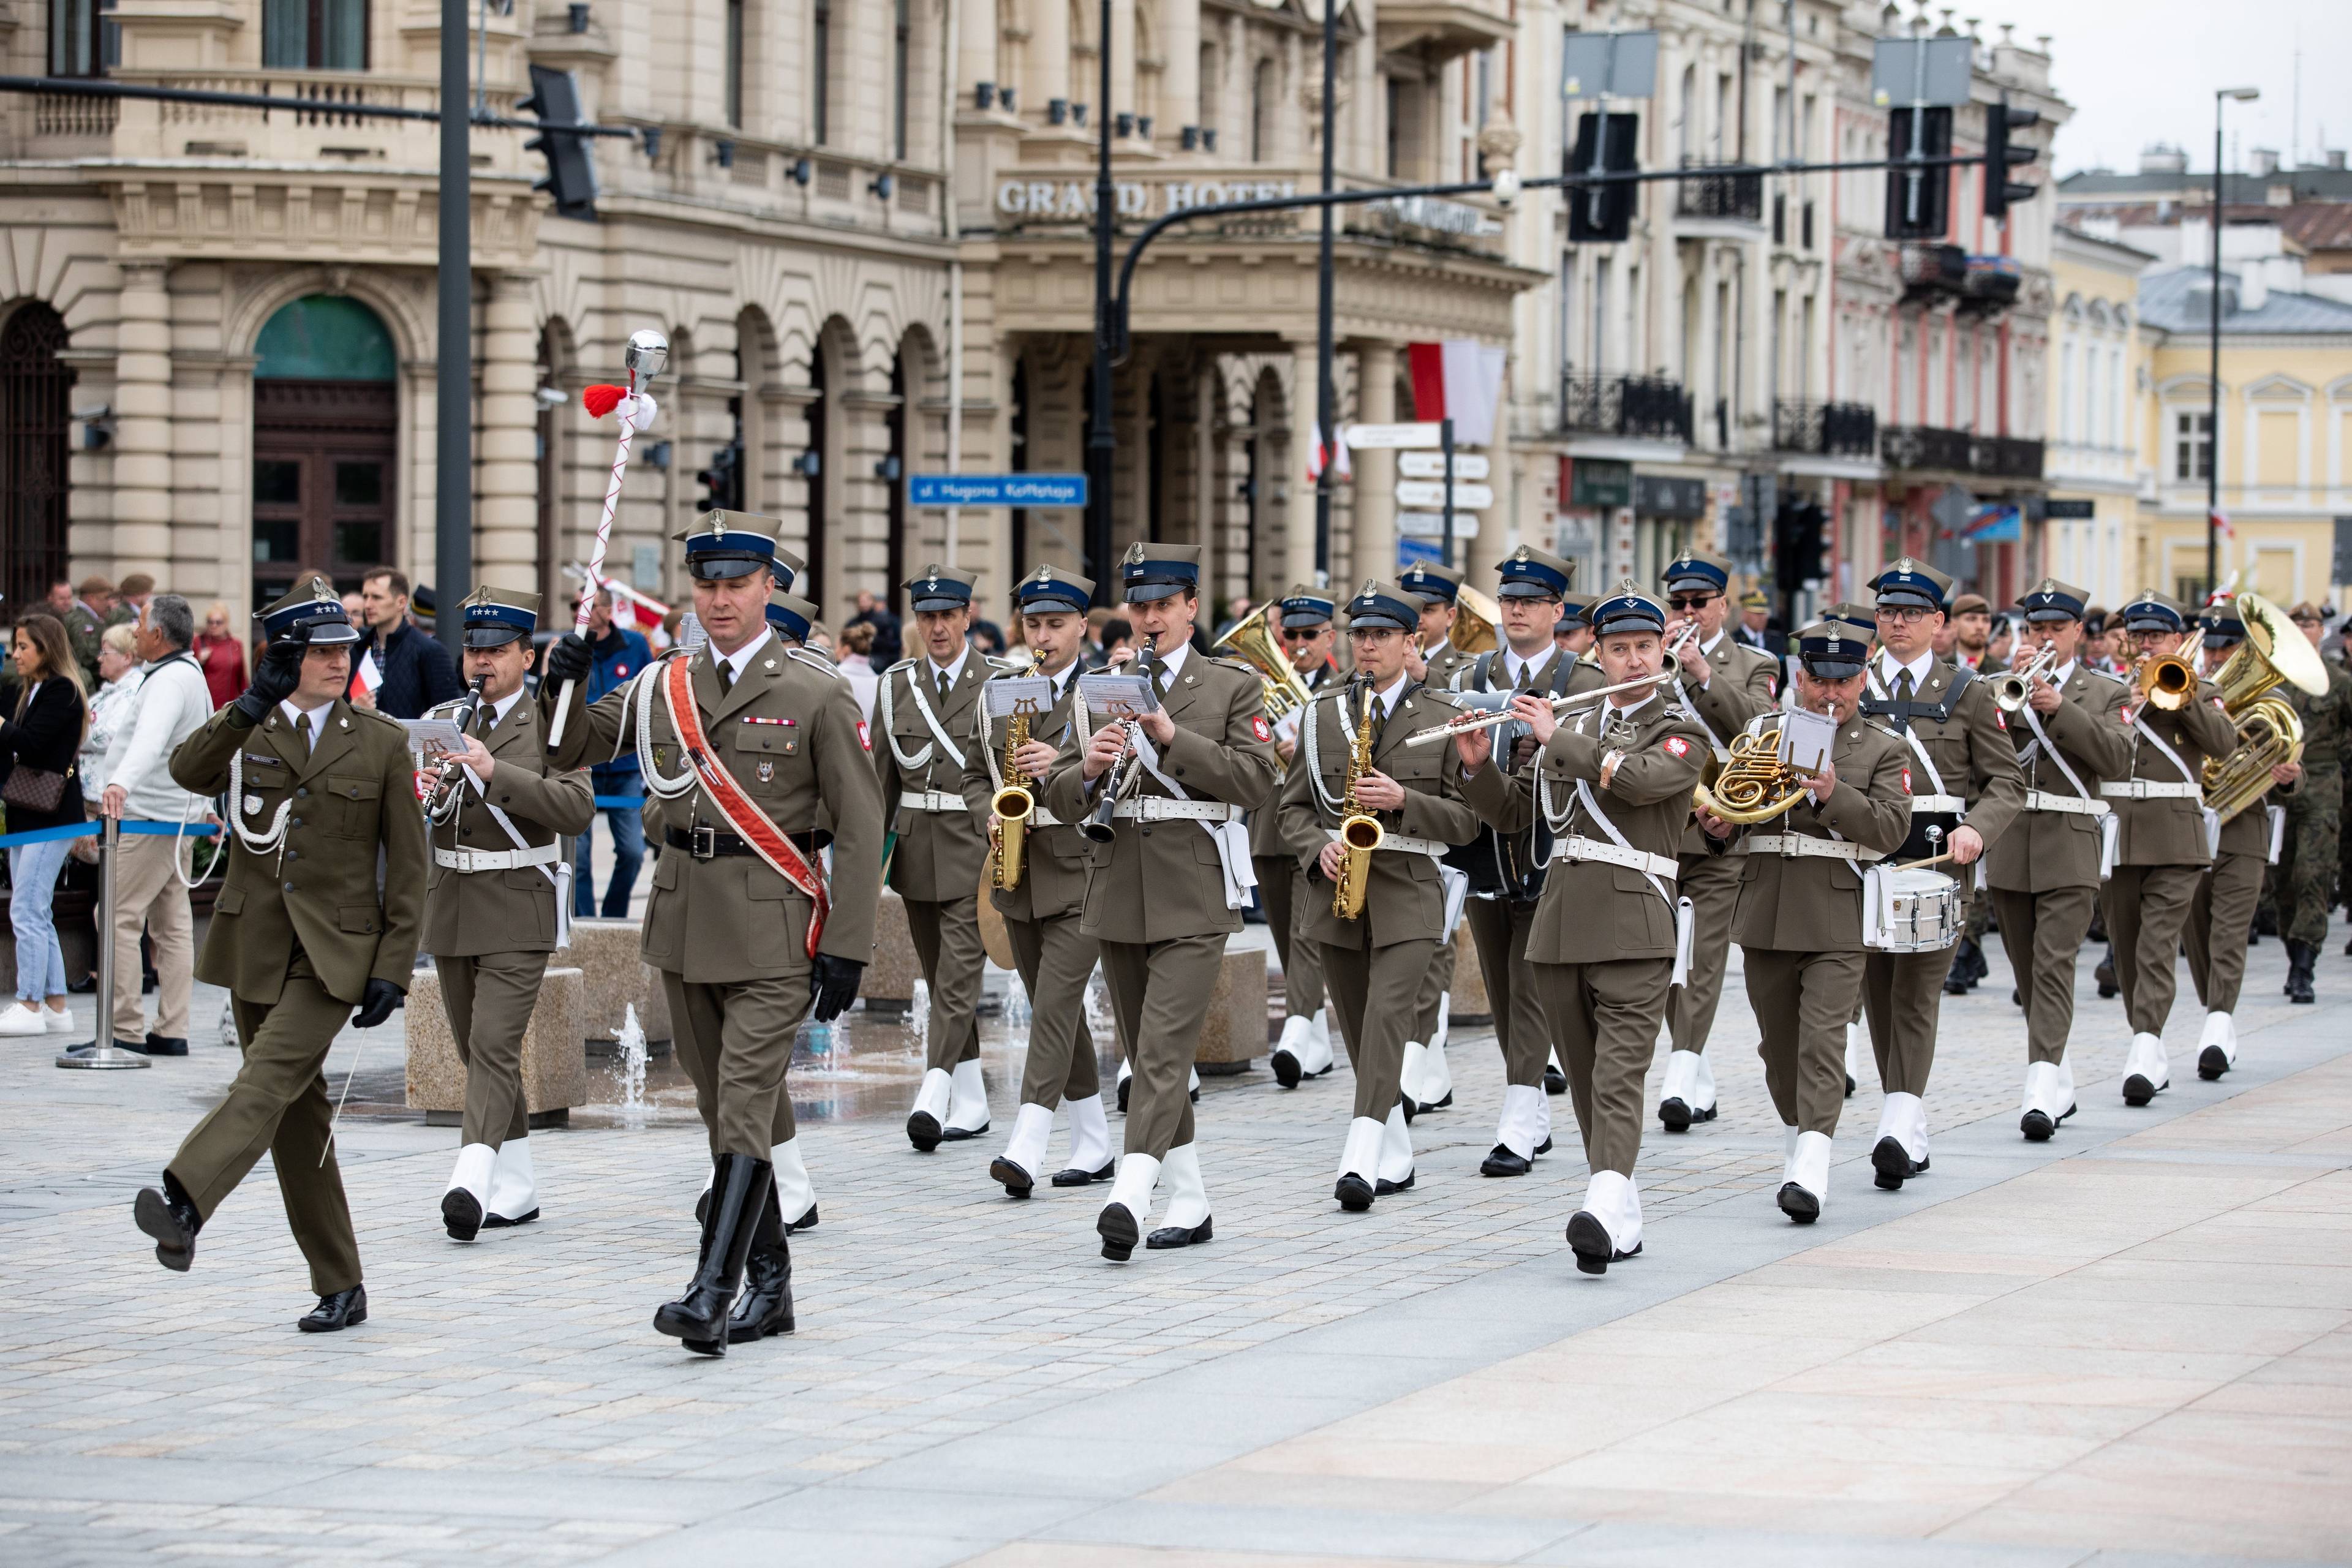 orkiestra wojskowa w stroju galowym maszeruje przez ulicę z XIX-wiecznymi budynkami